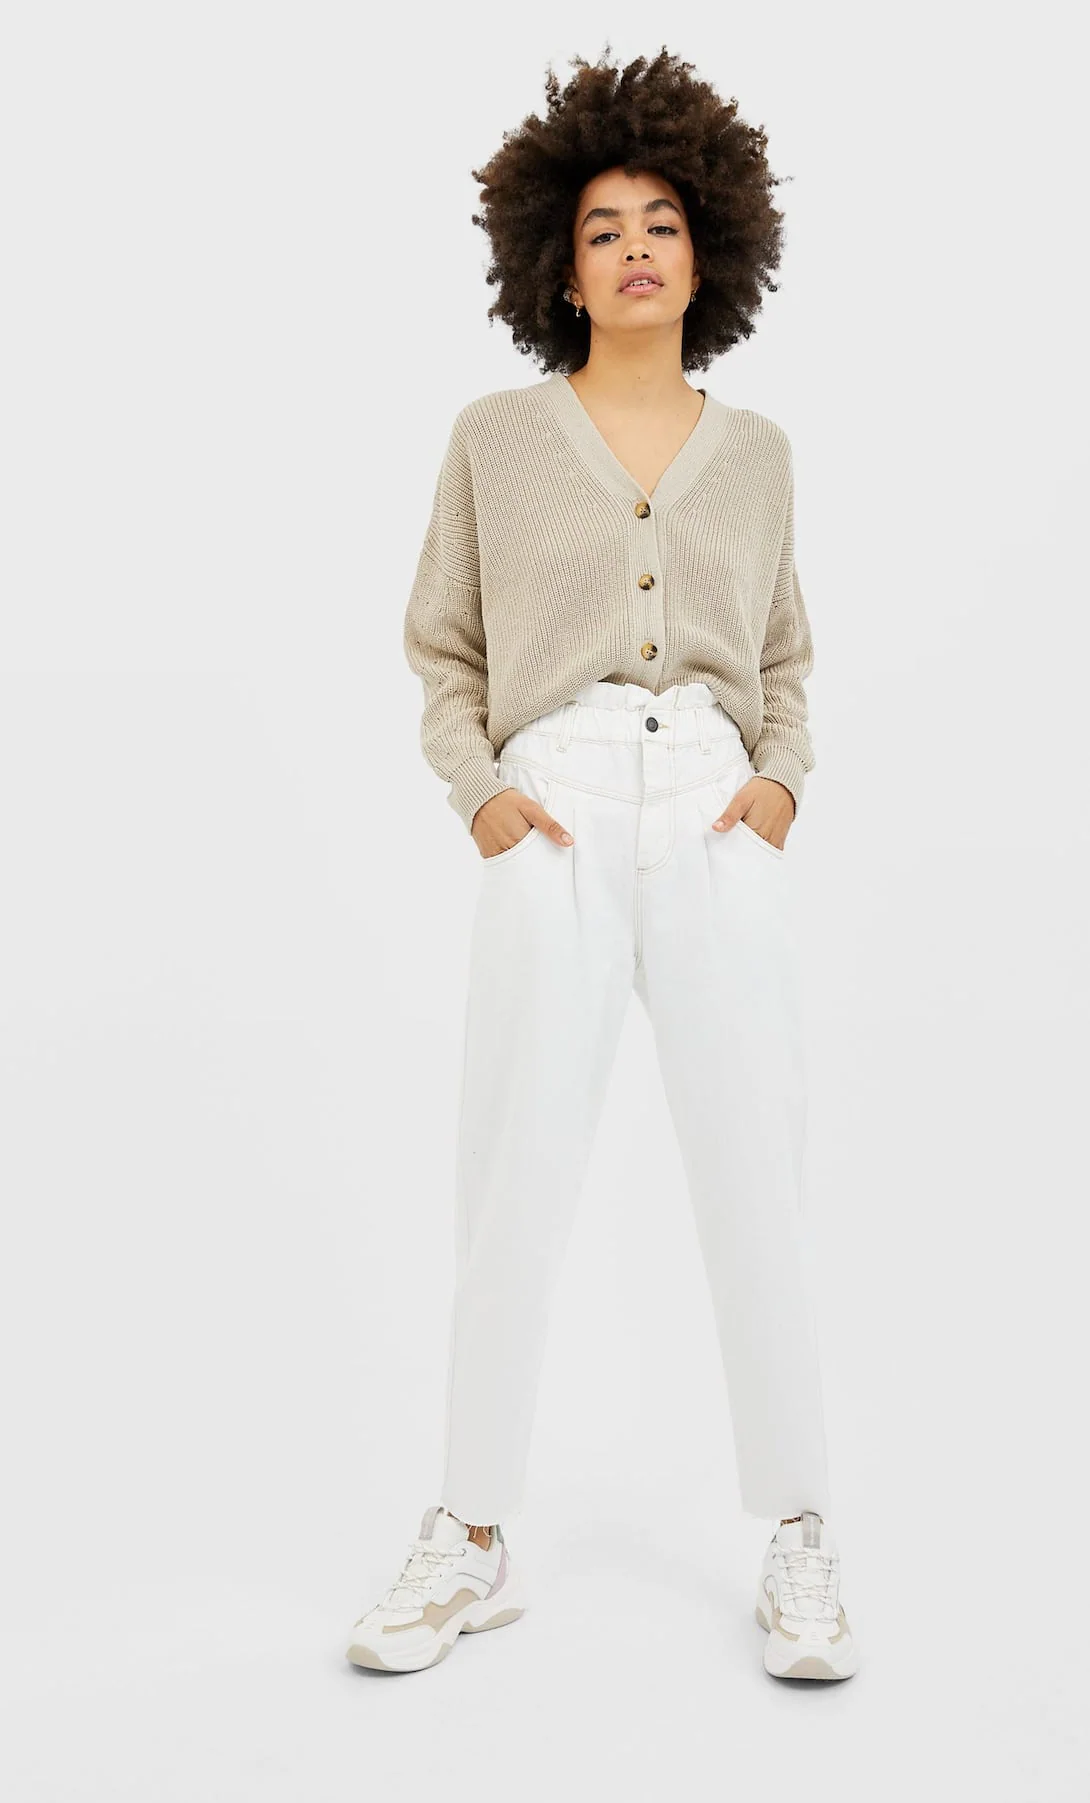 Los pantalones blancos más bonitos de las rebajas 2020